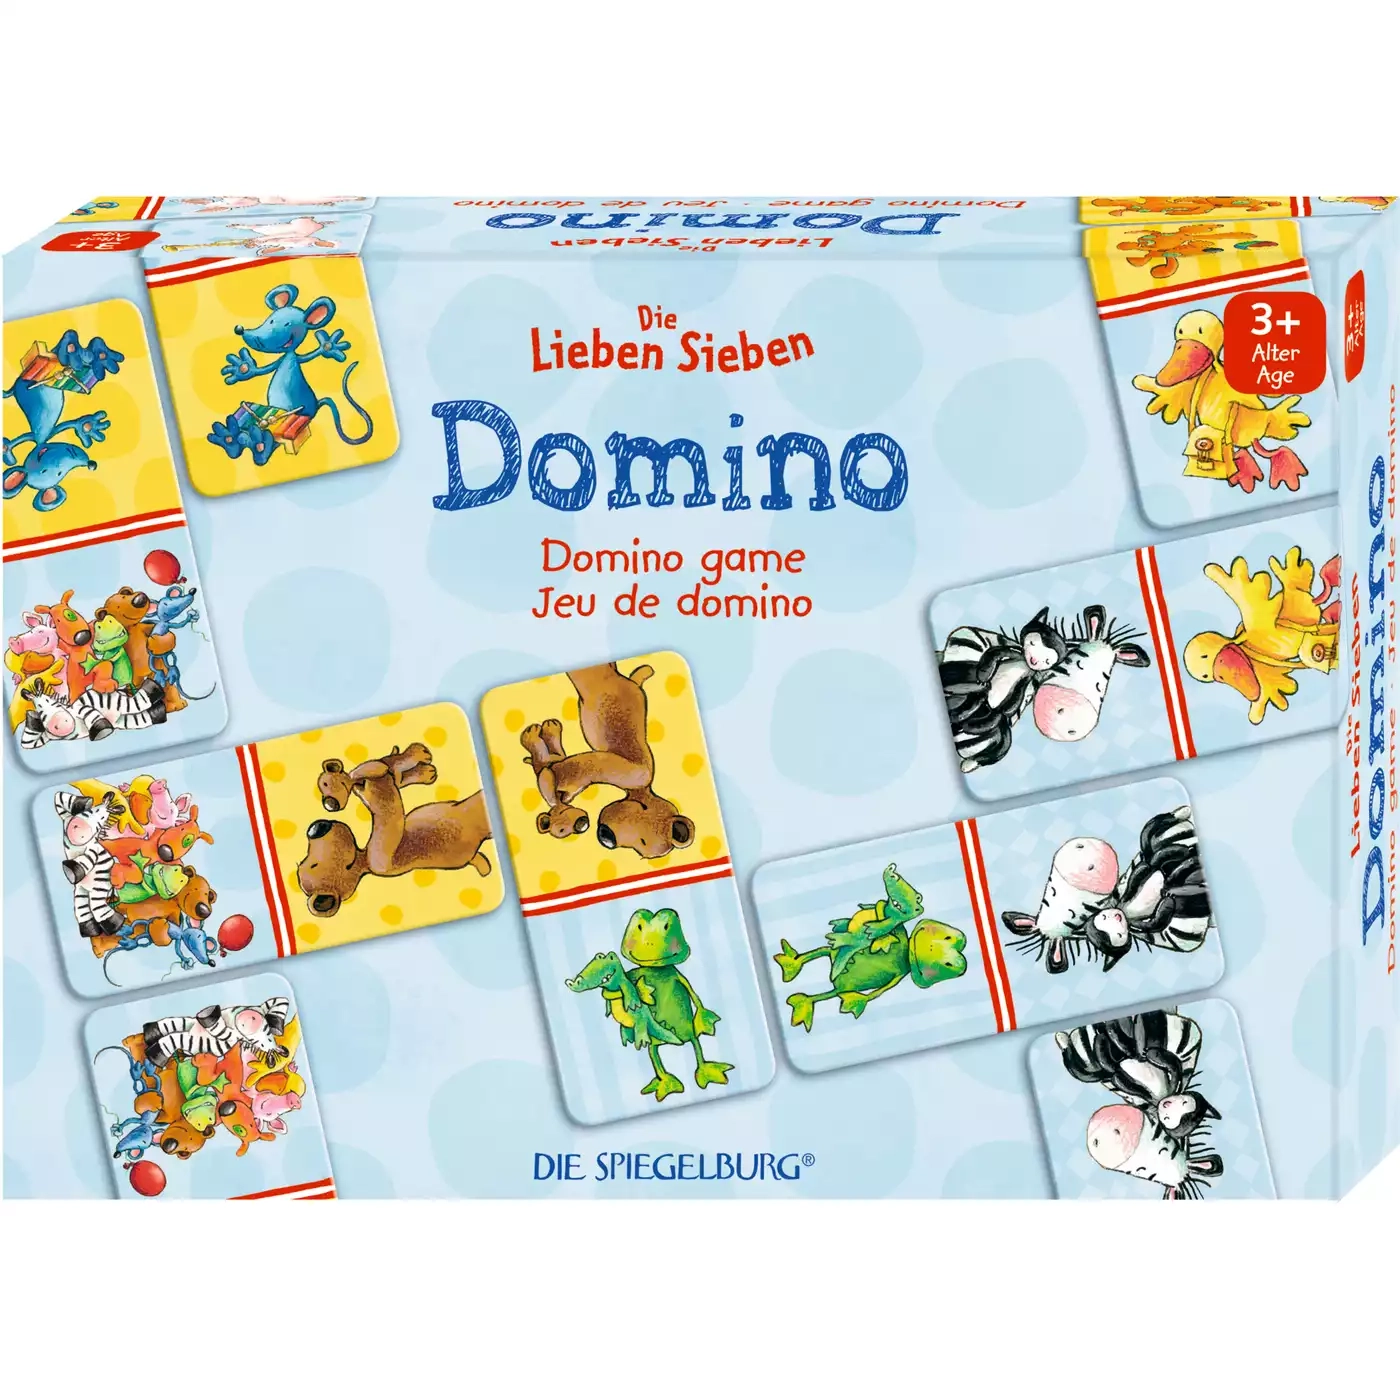 Domino Die Lieben Sieben DIE SPIEGELBURG 2000574527703 3